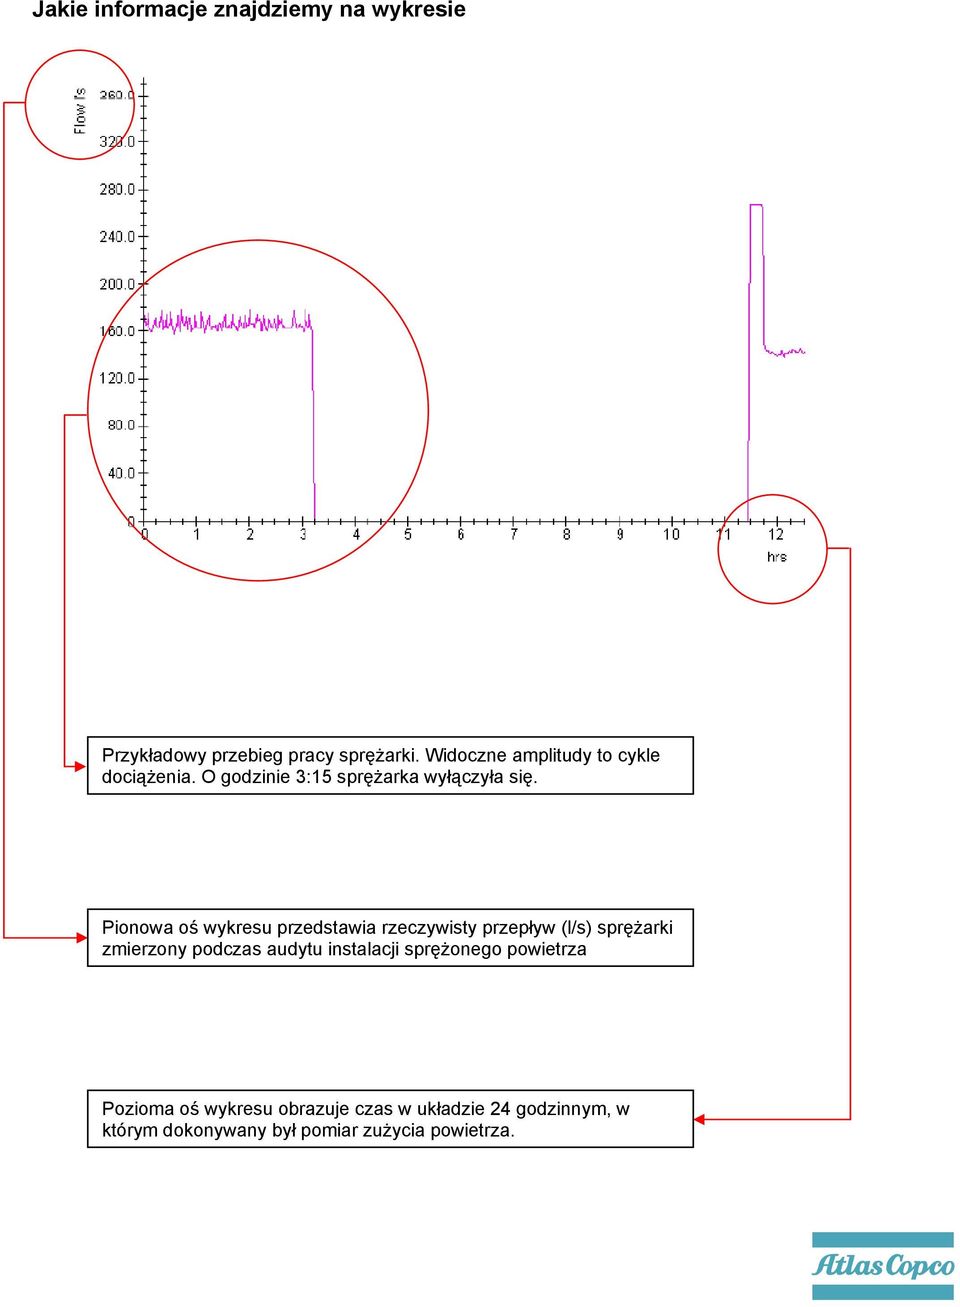 Pionowa oś wykresu przedstawia rzeczywisty przepływ (l/s) sprężarki zmierzony podczas audytu